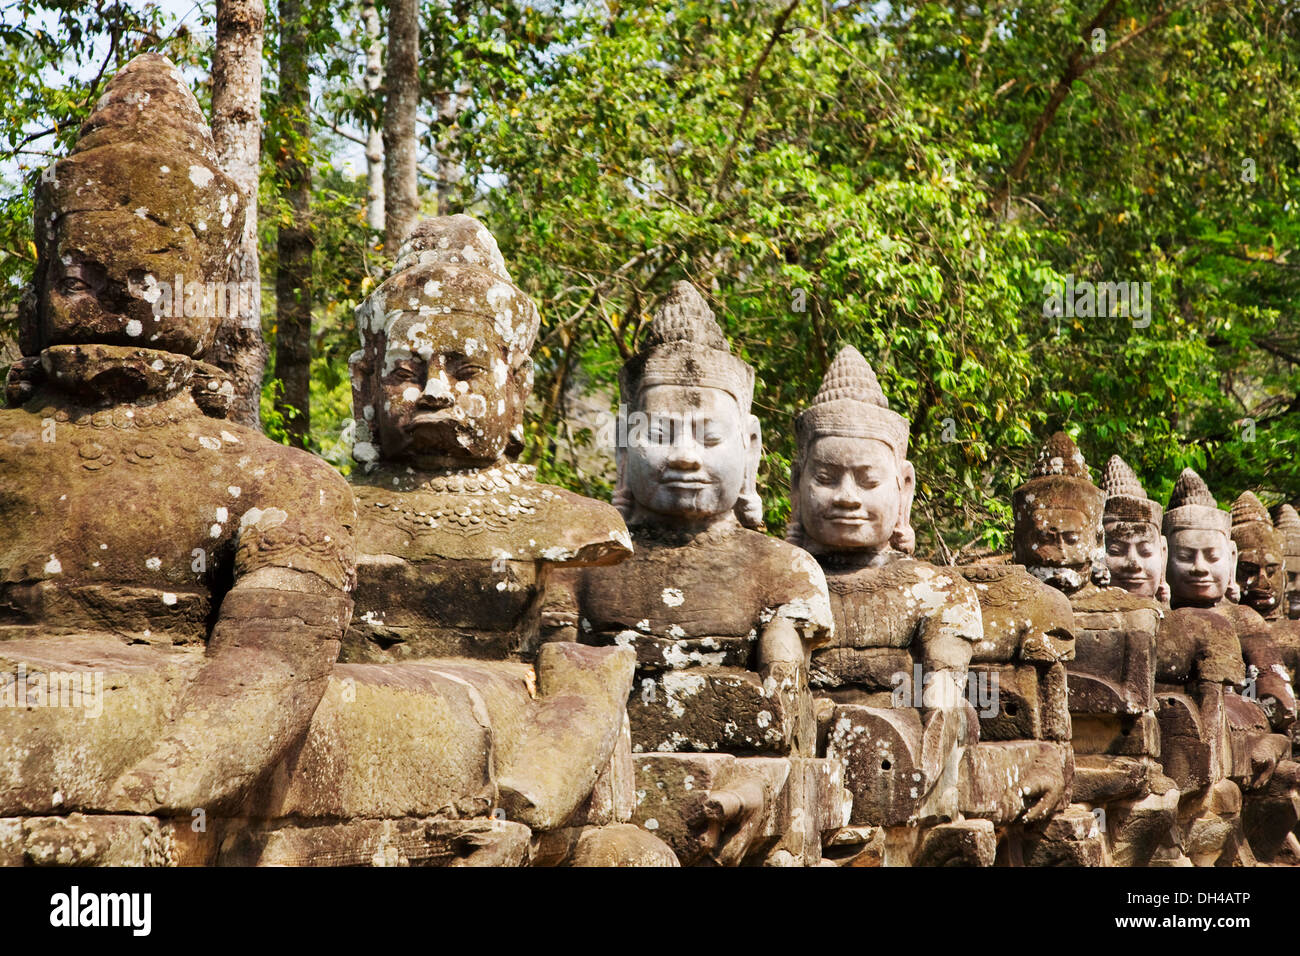 Las estatuas en el sitio arqueológico de Angkor, Siem Reap, Camboya Foto de stock